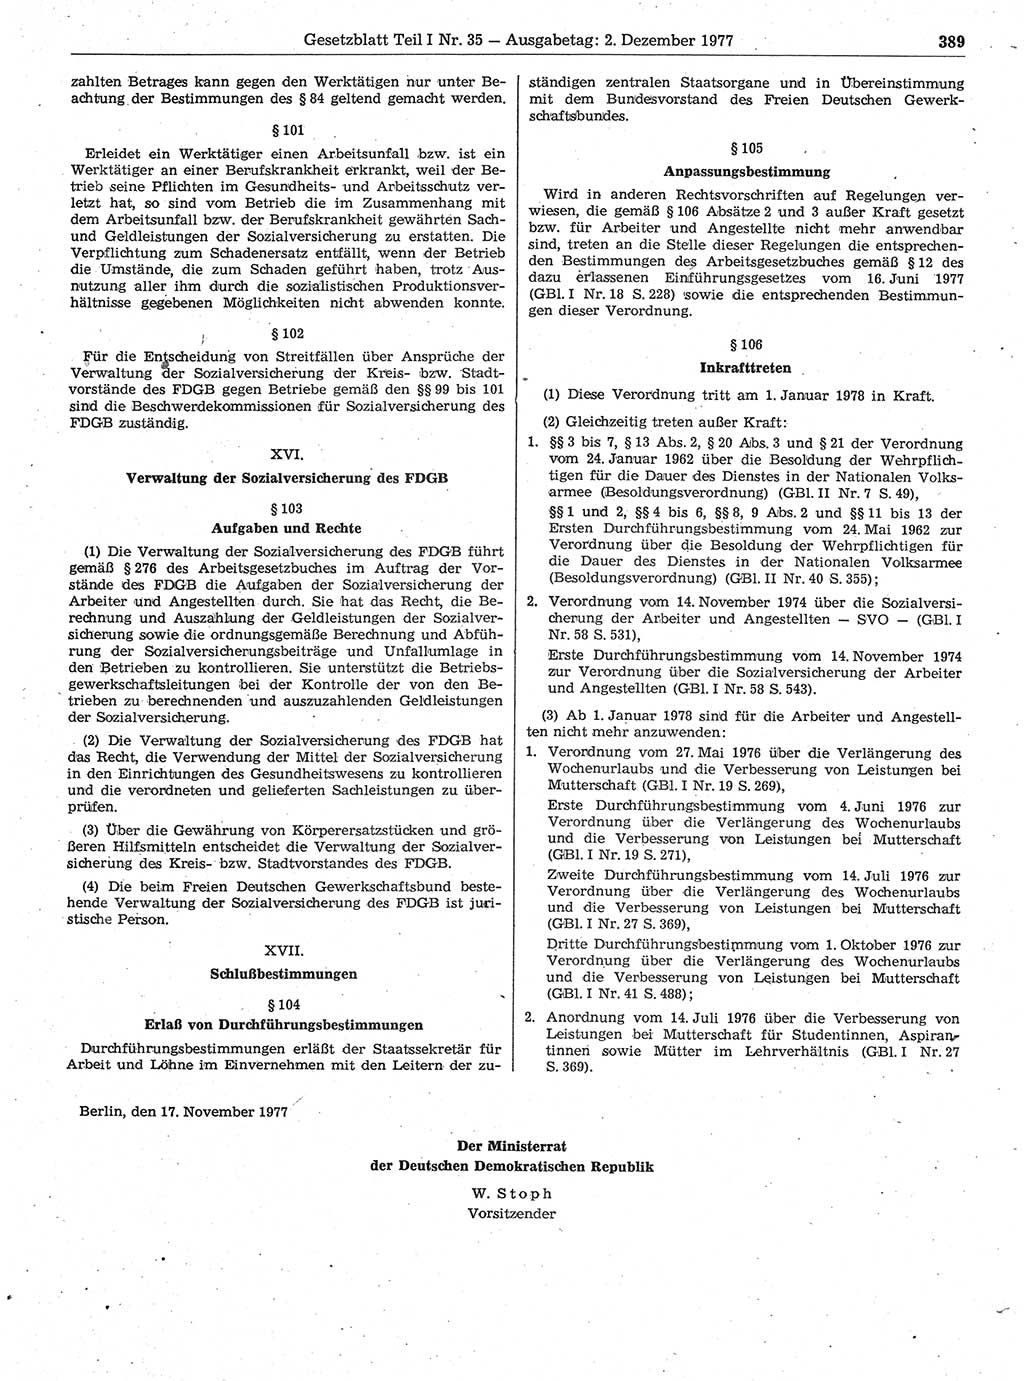 Gesetzblatt (GBl.) der Deutschen Demokratischen Republik (DDR) Teil Ⅰ 1977, Seite 389 (GBl. DDR Ⅰ 1977, S. 389)